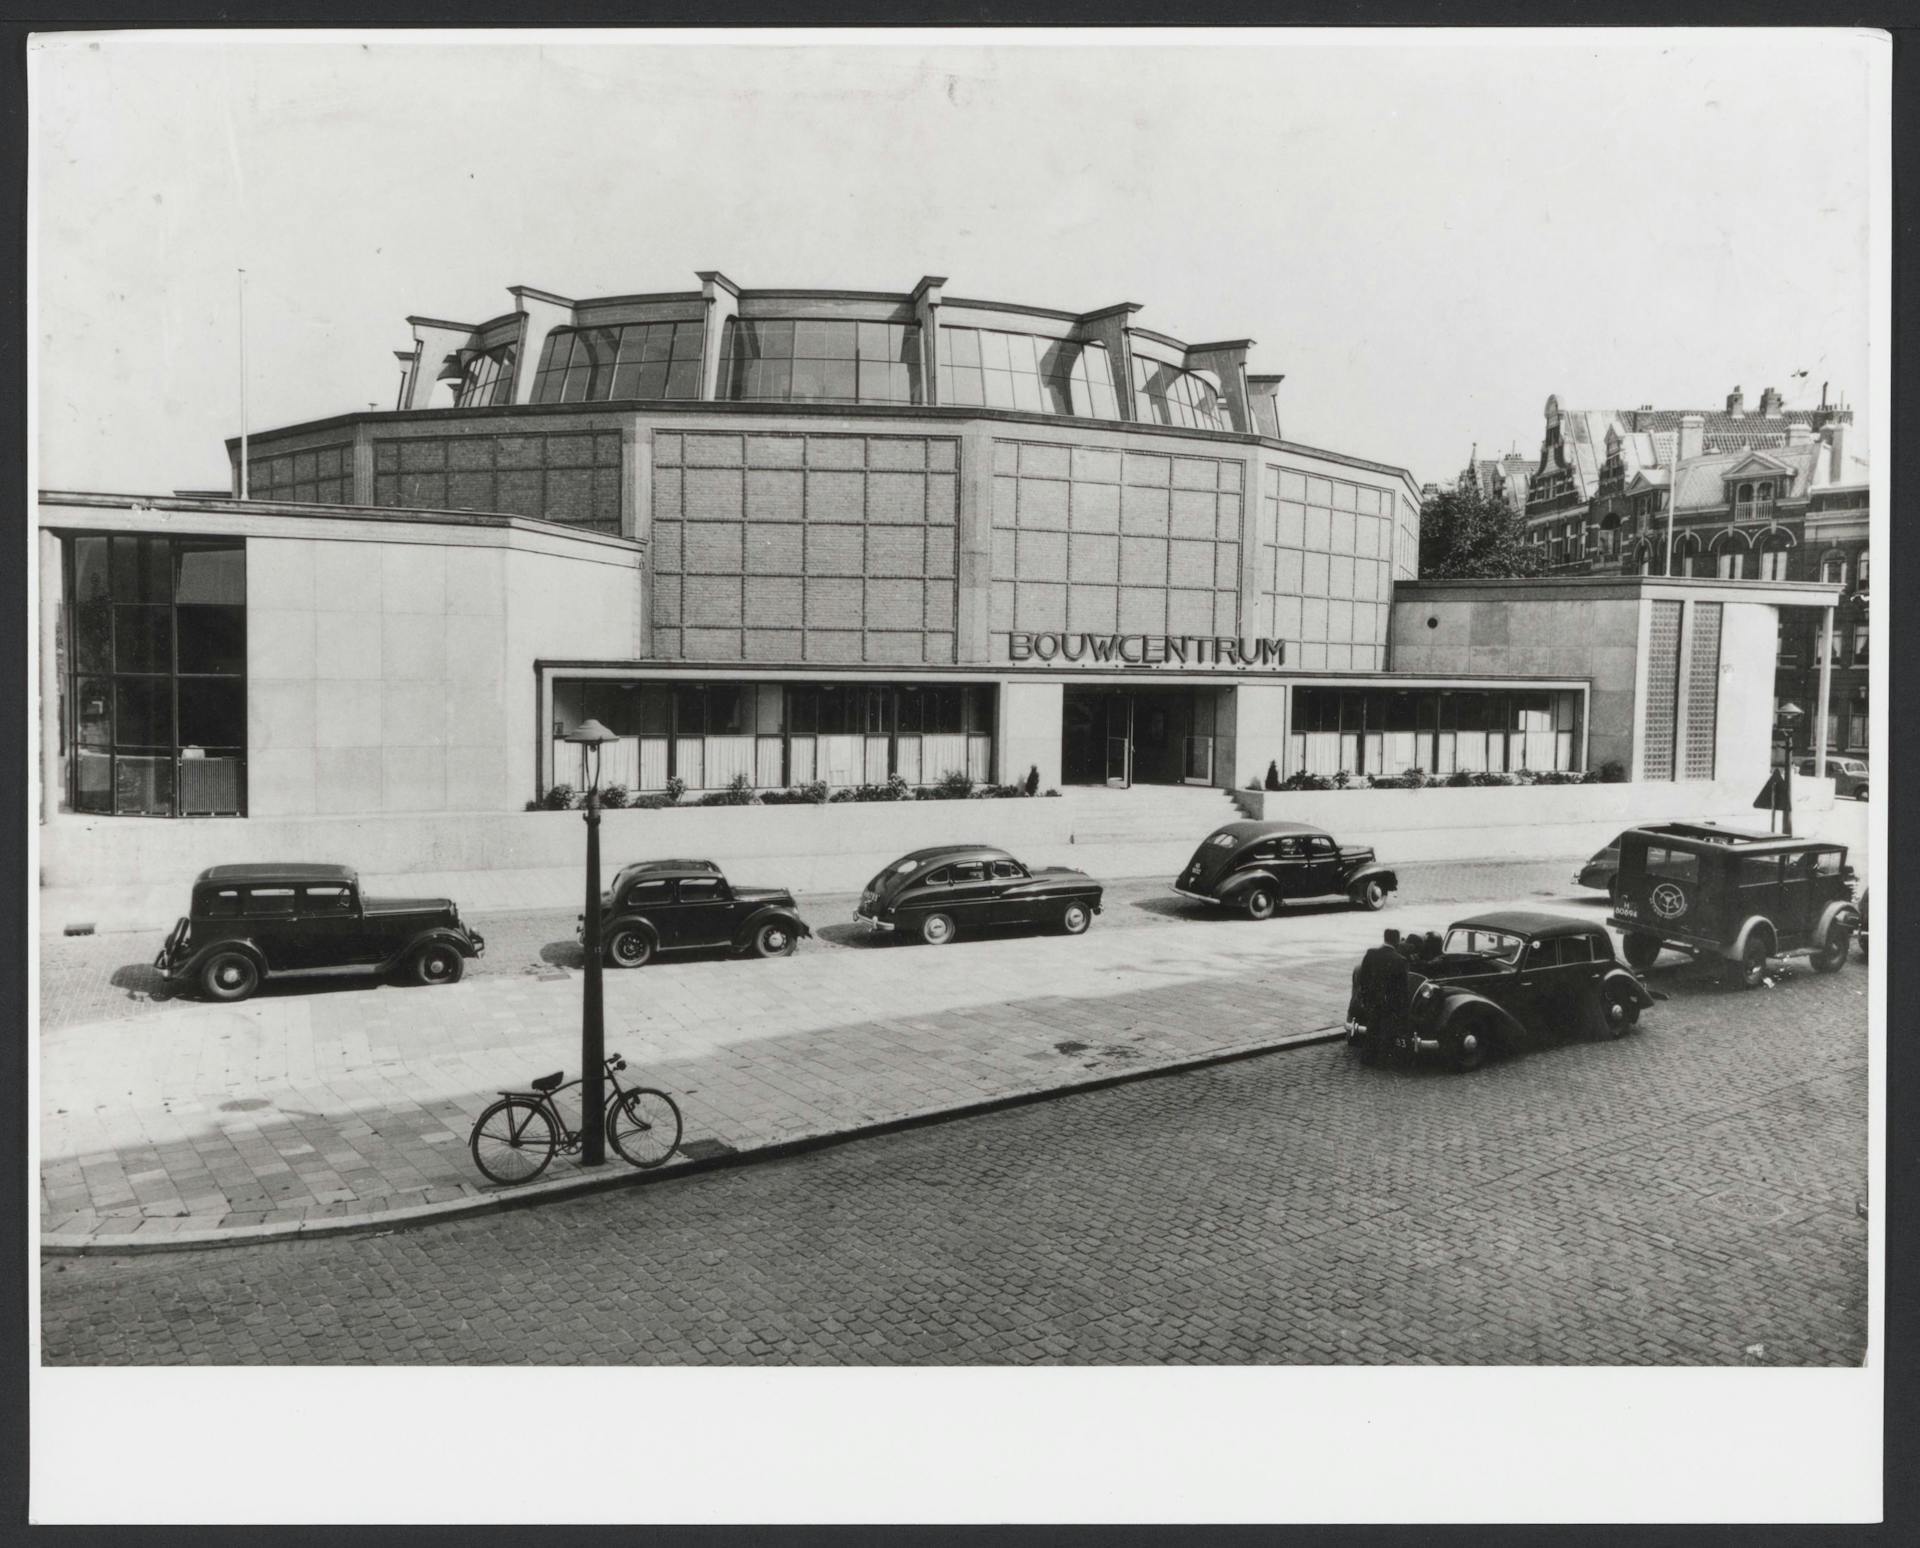 J. W. C. Boks. Bouwcentrum Rotterdam, exterieur, 1946-1949. Foto C. van Weele. Collectie Het Nieuwe Instituut, Archief BOKS ph54. © C. van Weele/MAI